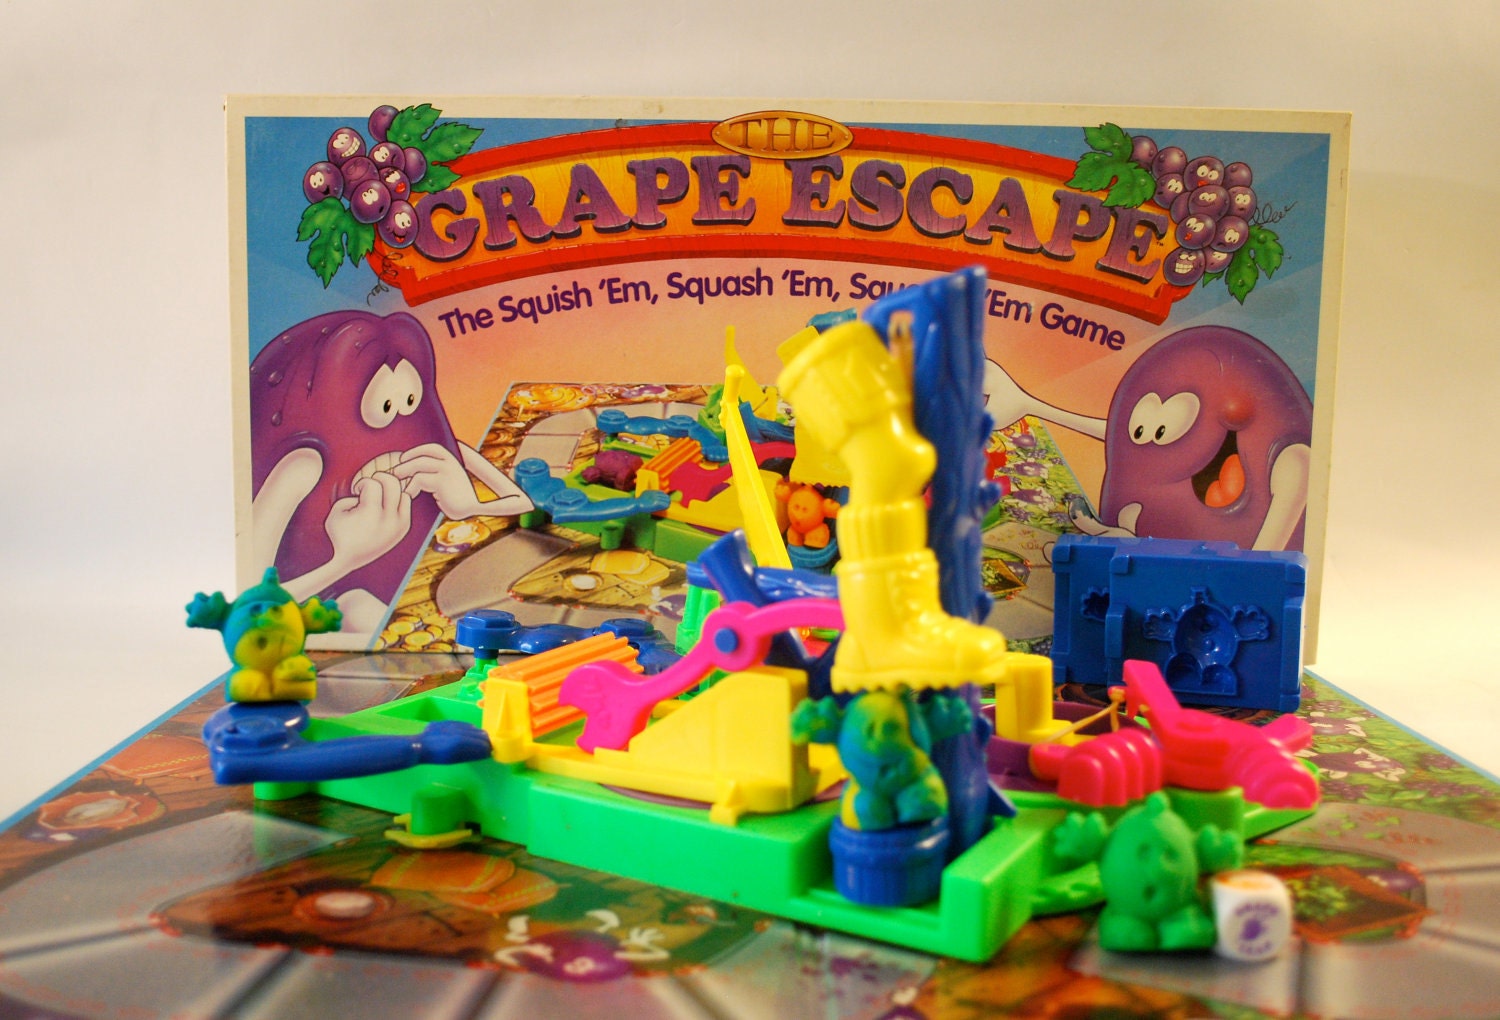 The Grape Escape Game